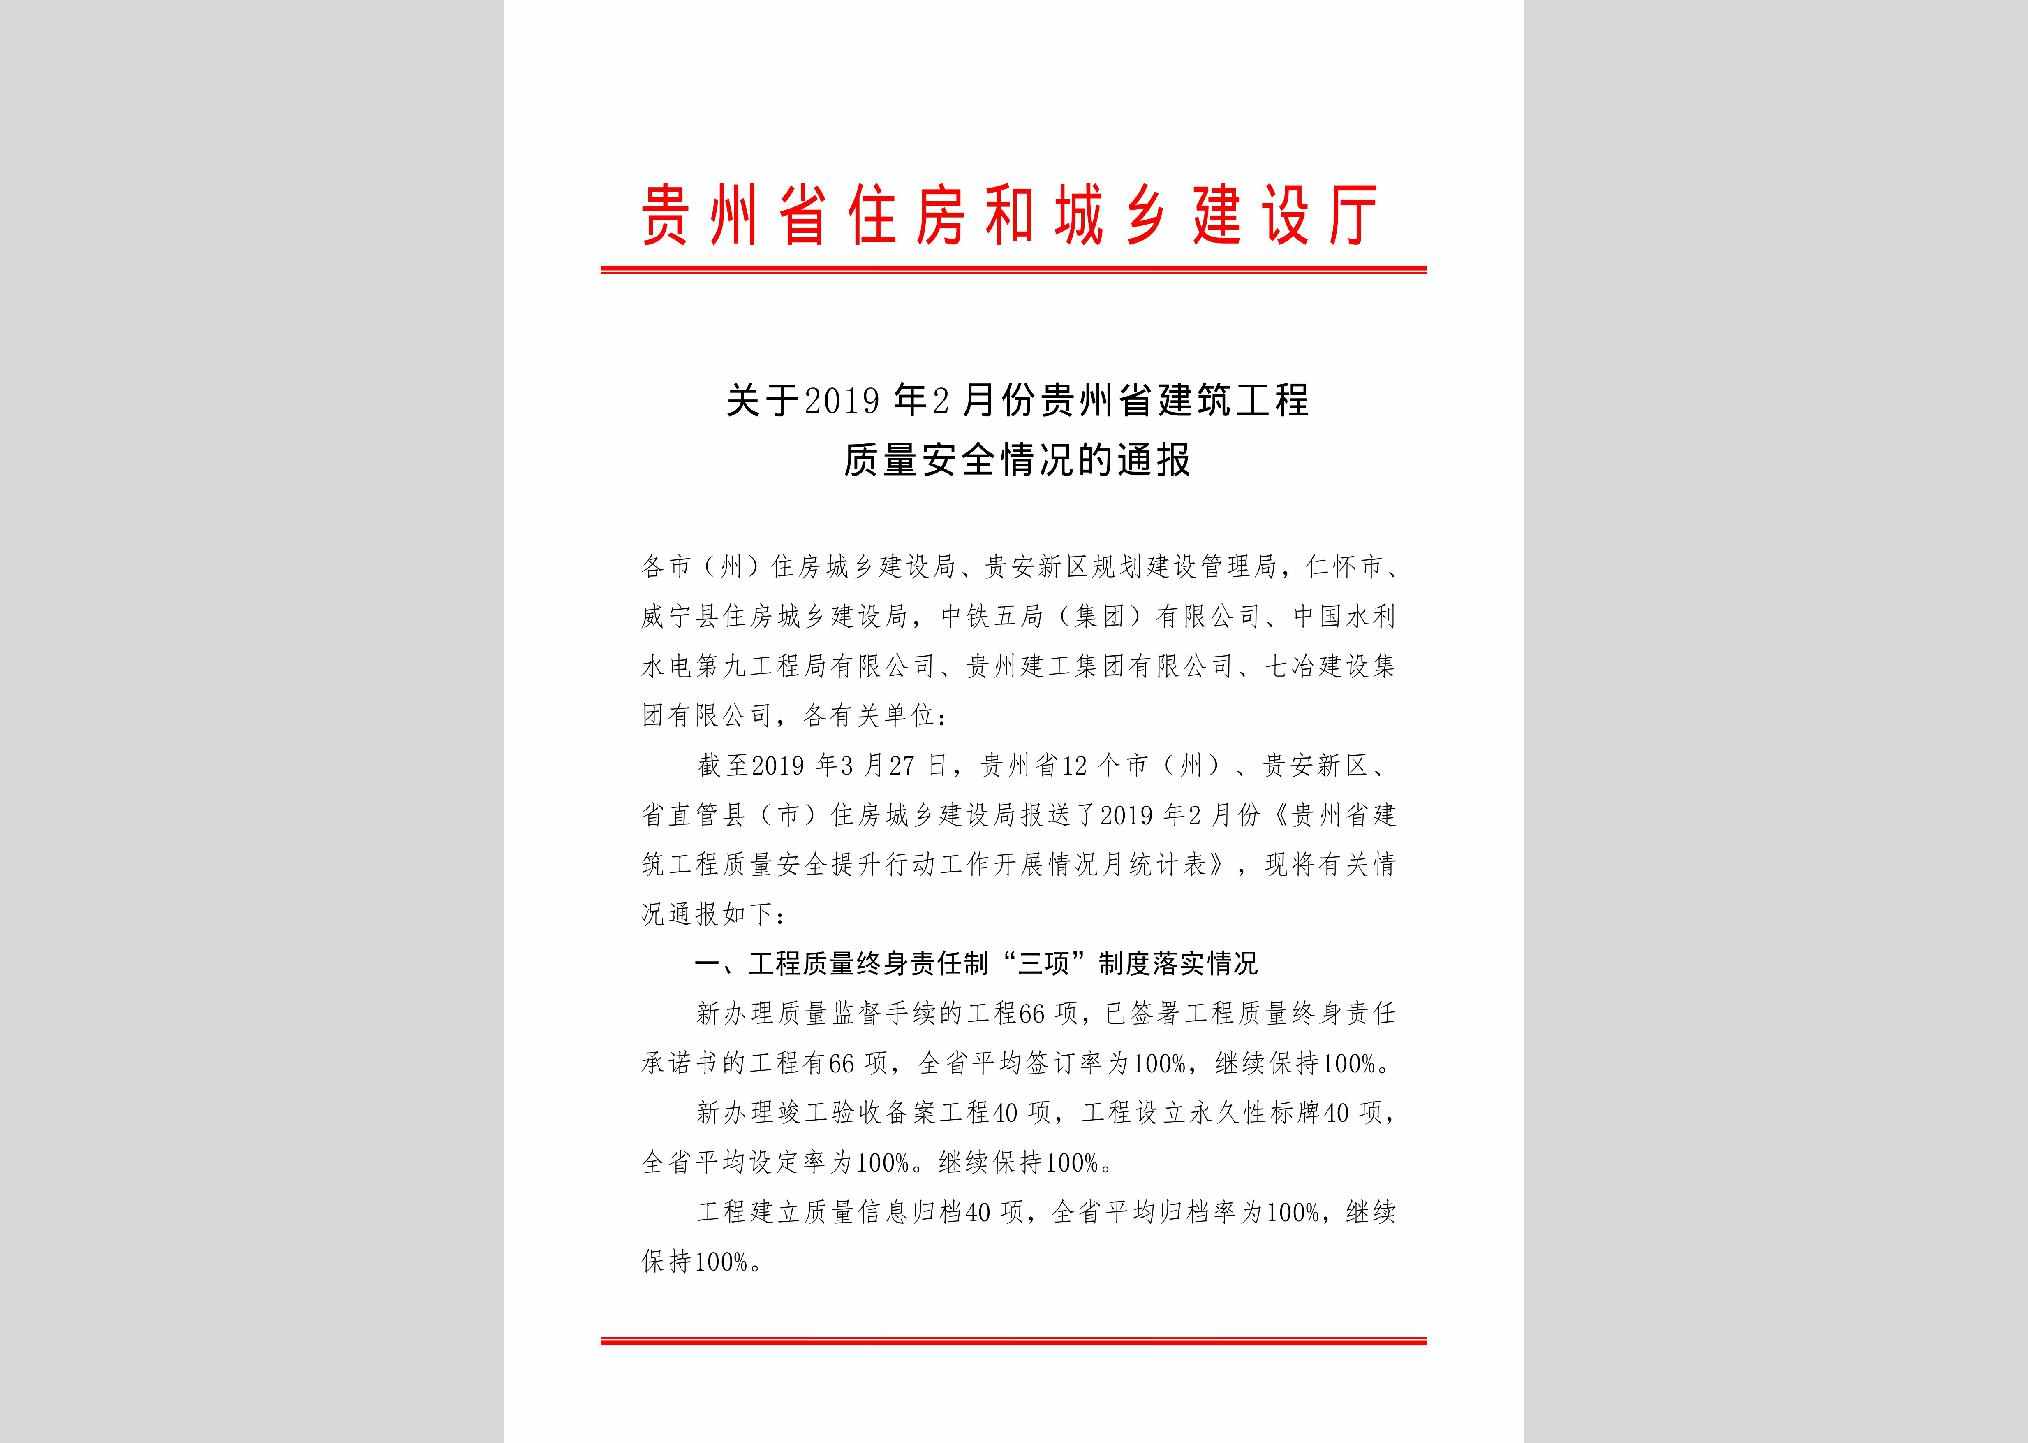 GZ-GCZLAQQK-2019：关于2019年2月份贵州省建筑工程质量安全情况的通报